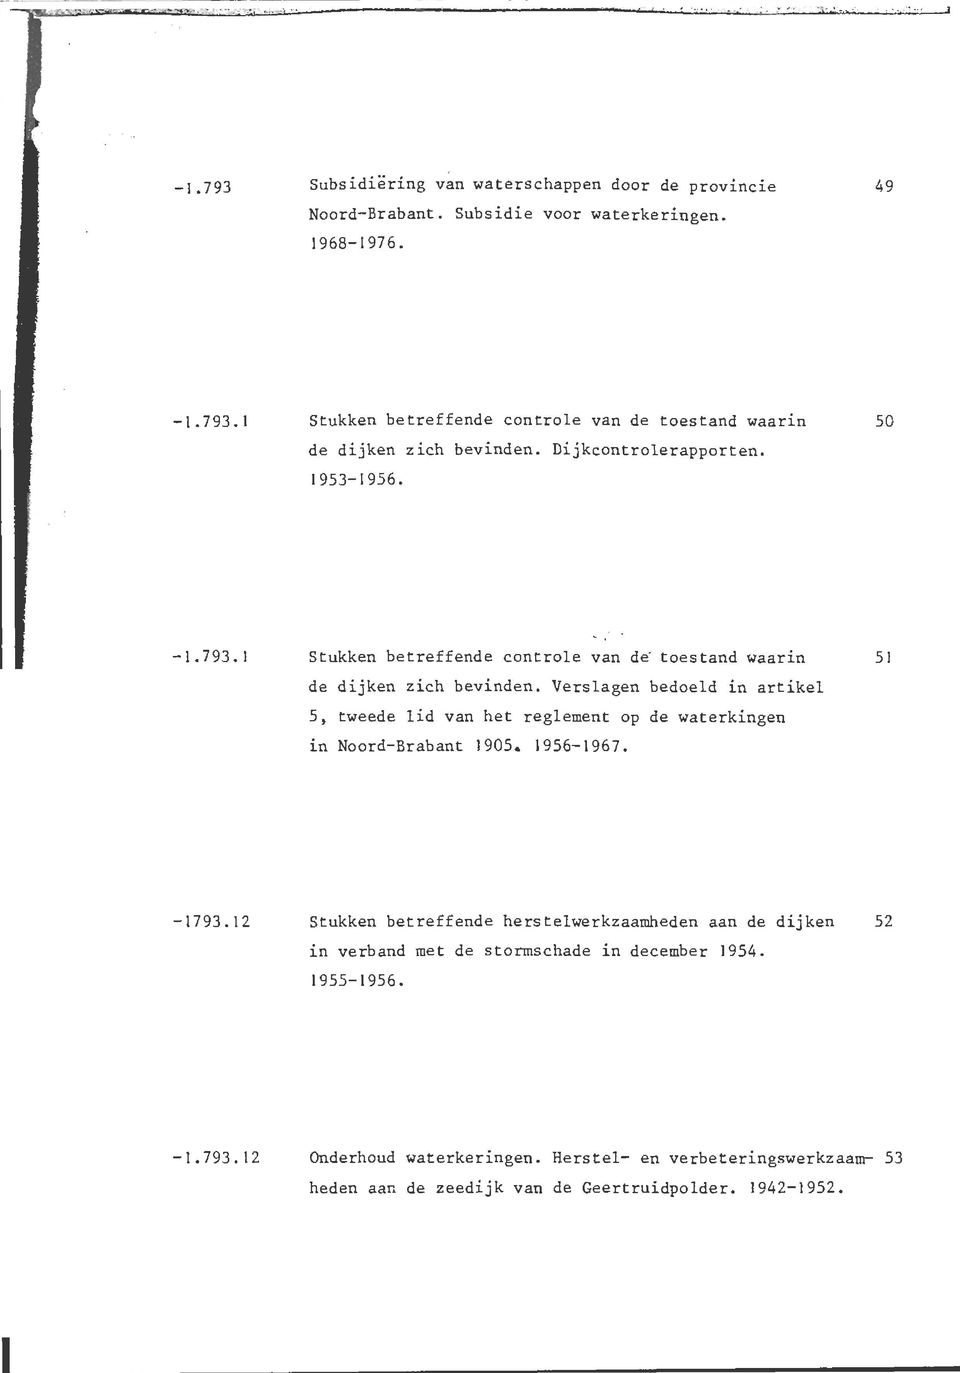 Verslagen bedoeld in artikel 5, tweede lid van het reglement op de waterkingen in Noord-Brabant 1905. 1956-1967. 51-1793.